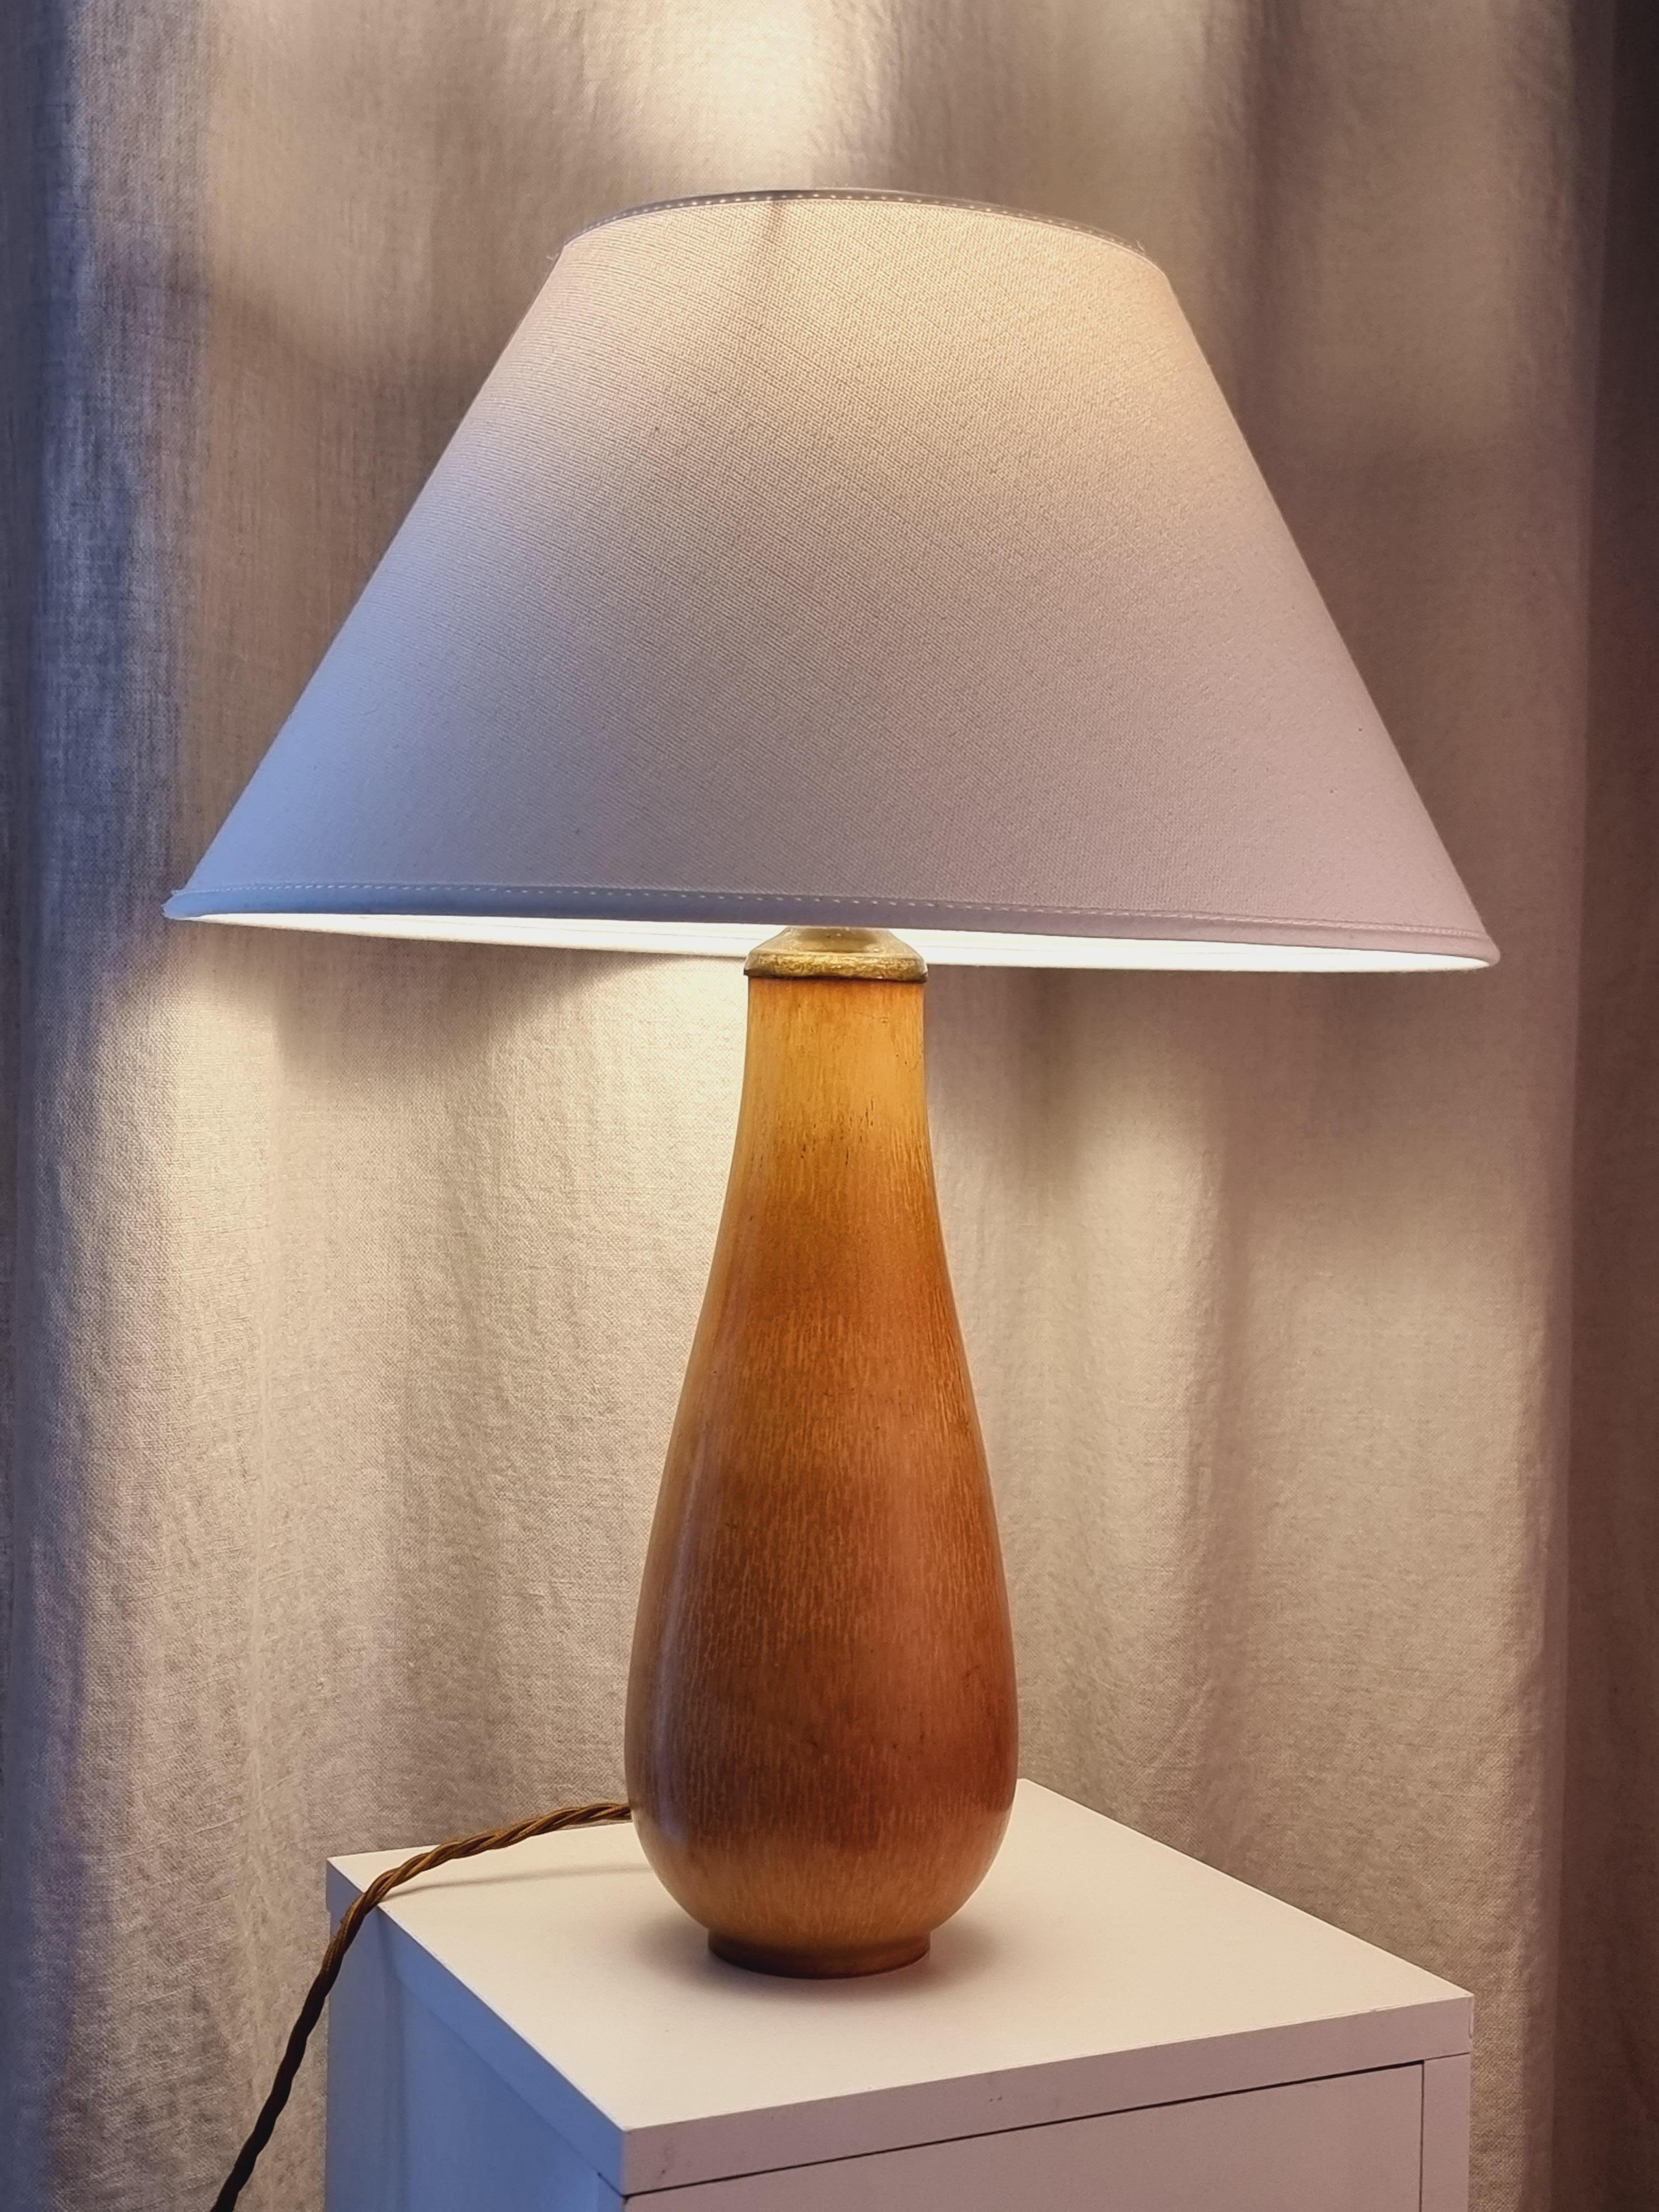 Ein schönes Beispiel für Gunnar Nylunds Kunstfertigkeit, eine Tischlampe aus Keramik mit brauner Hasenfellglasur. 

Gekennzeichnet mit Rörstrand und G. Nylund im Boden. In gutem Zustand, neue Verkabelung nach schwedischem Standard.

Über den